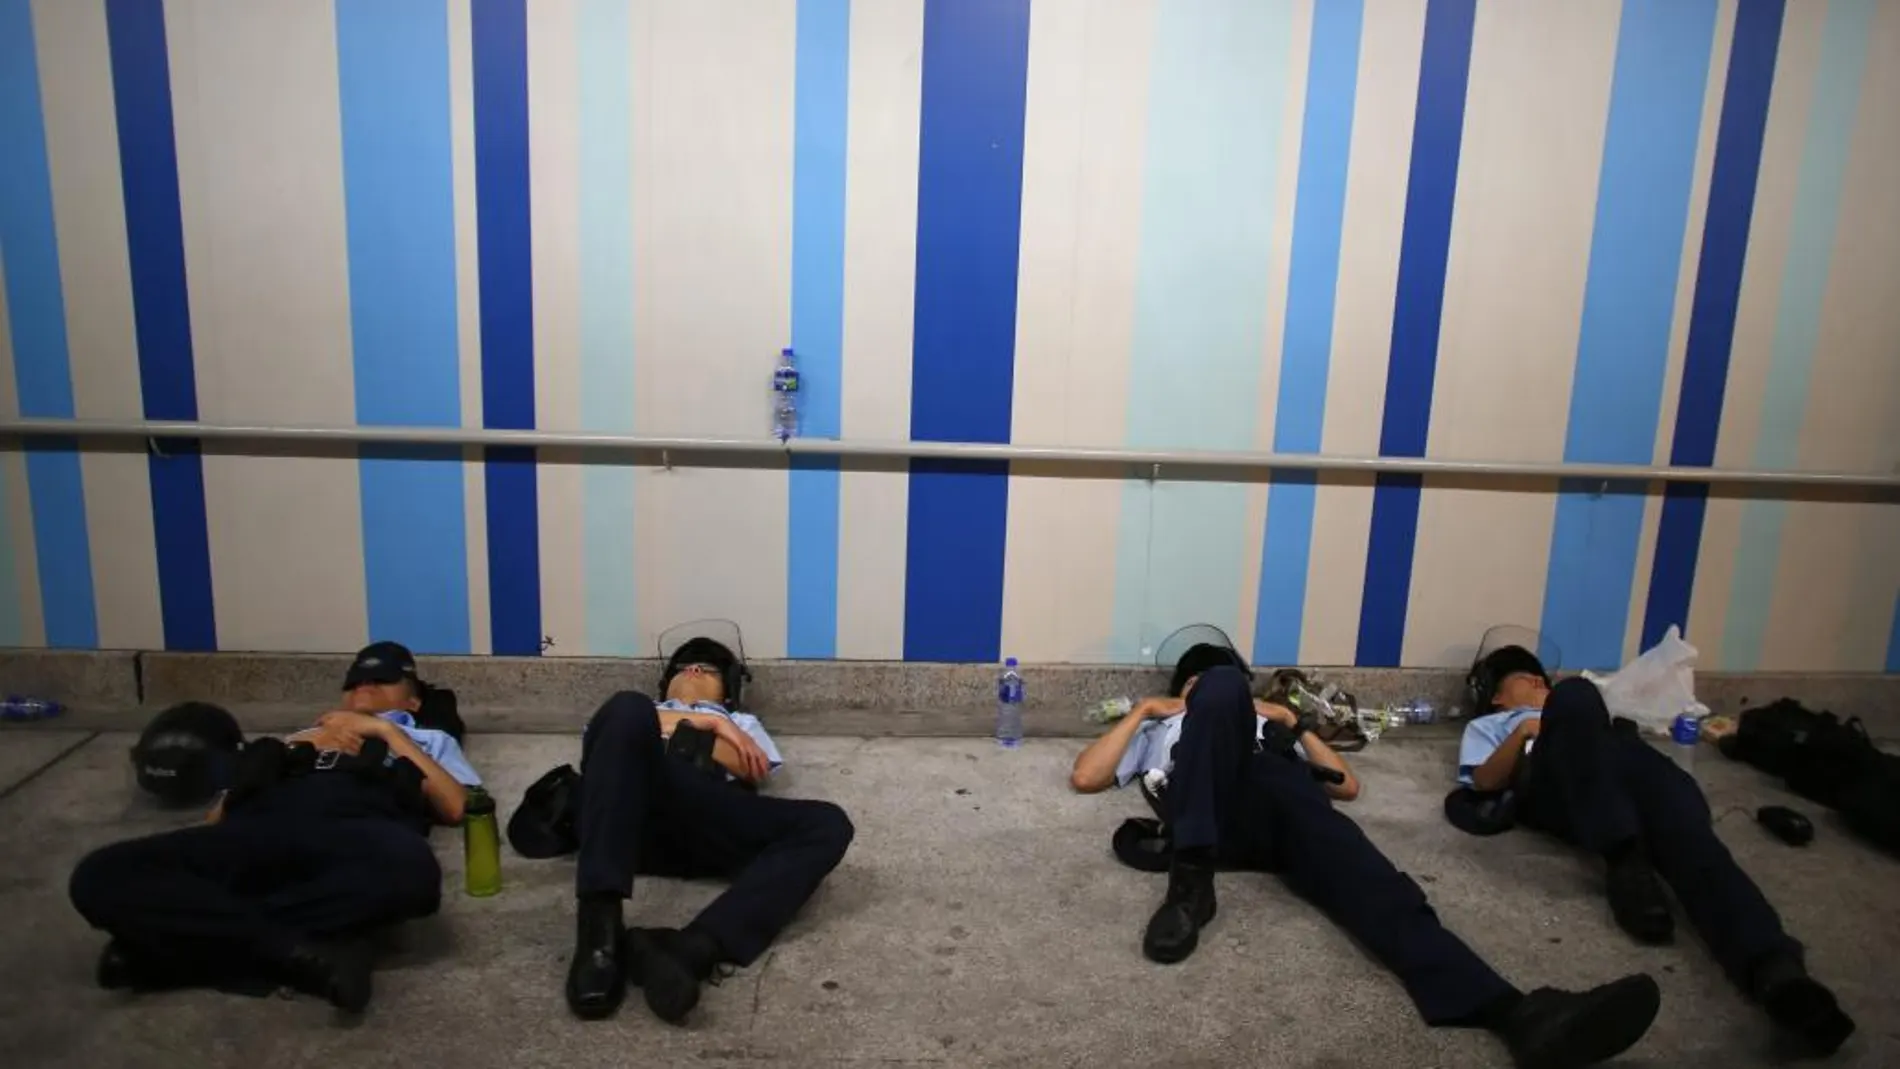 El sueño restablece las funciones físicas y psicológicas. En la imagen, policías de Hong Kong se echan una siesta